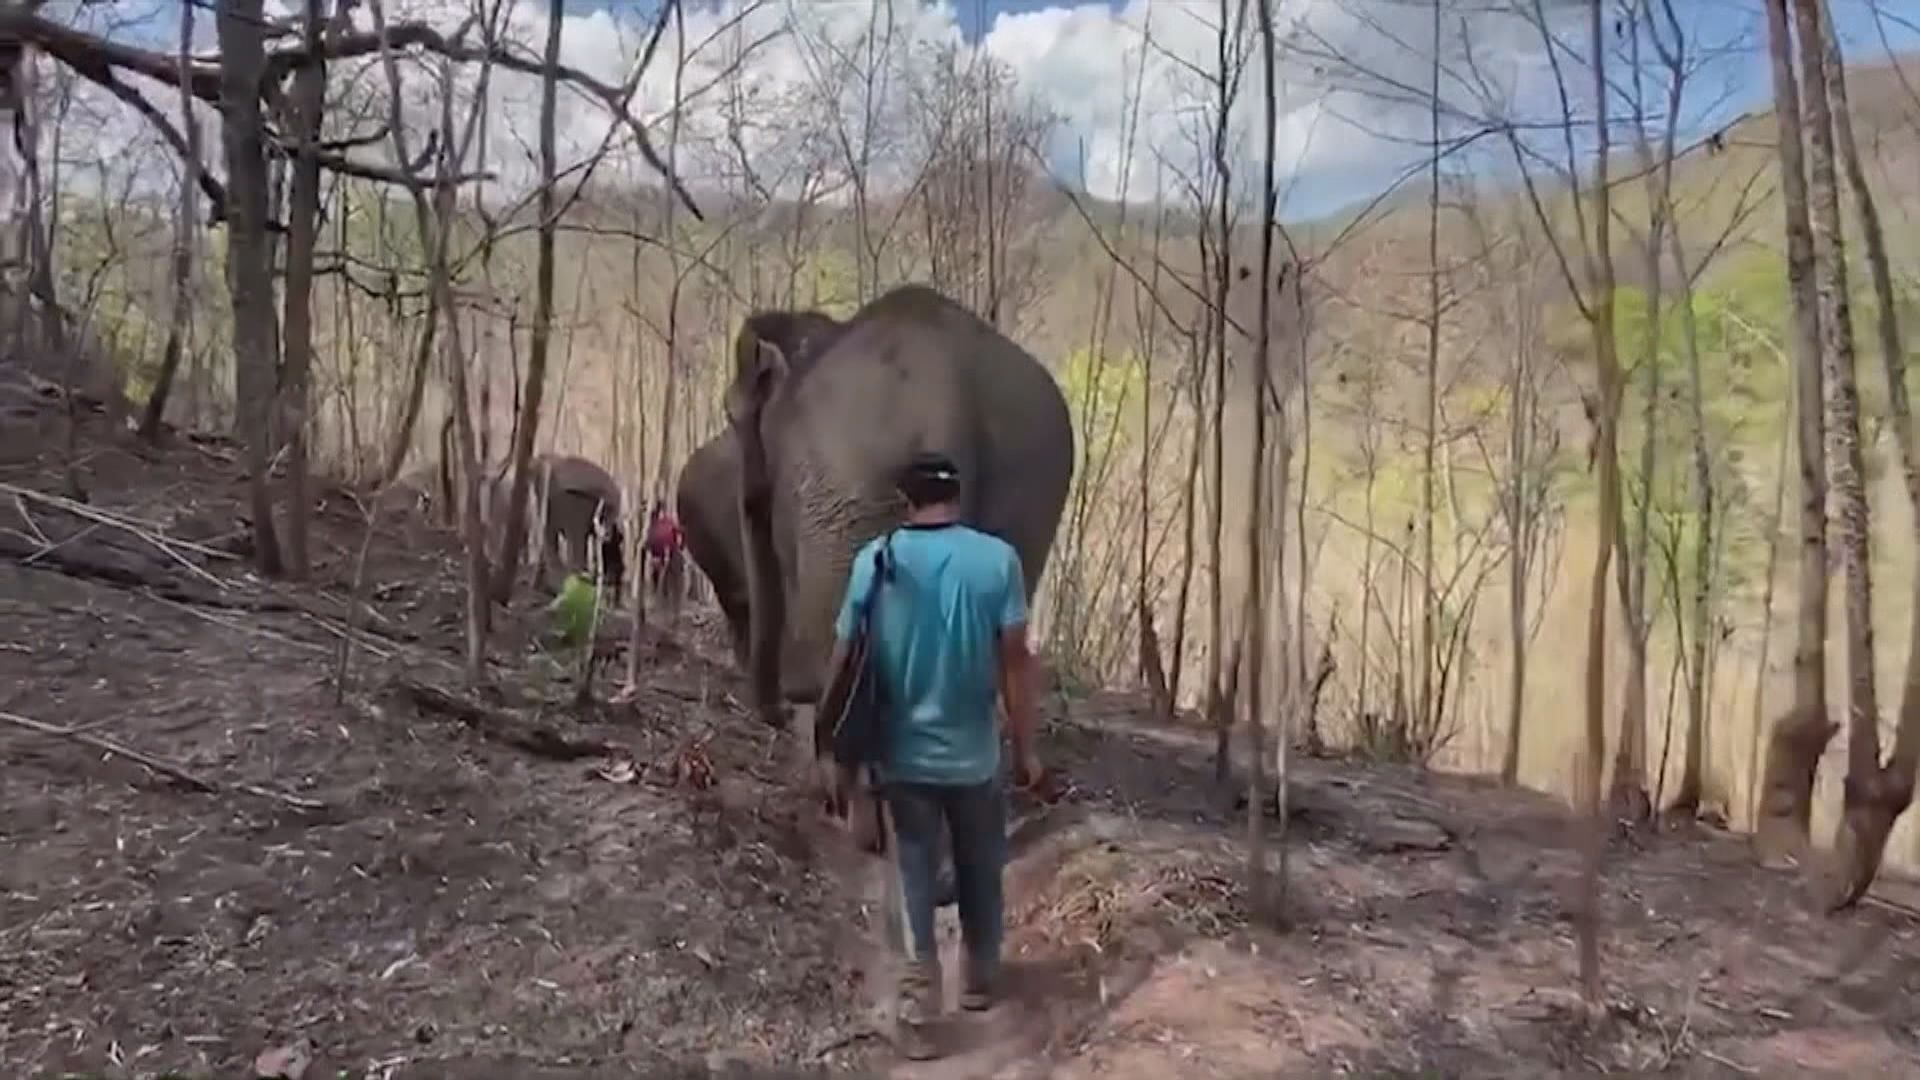 【環球薈報】泰國旅遊業受疫情打擊大象加入失業大軍